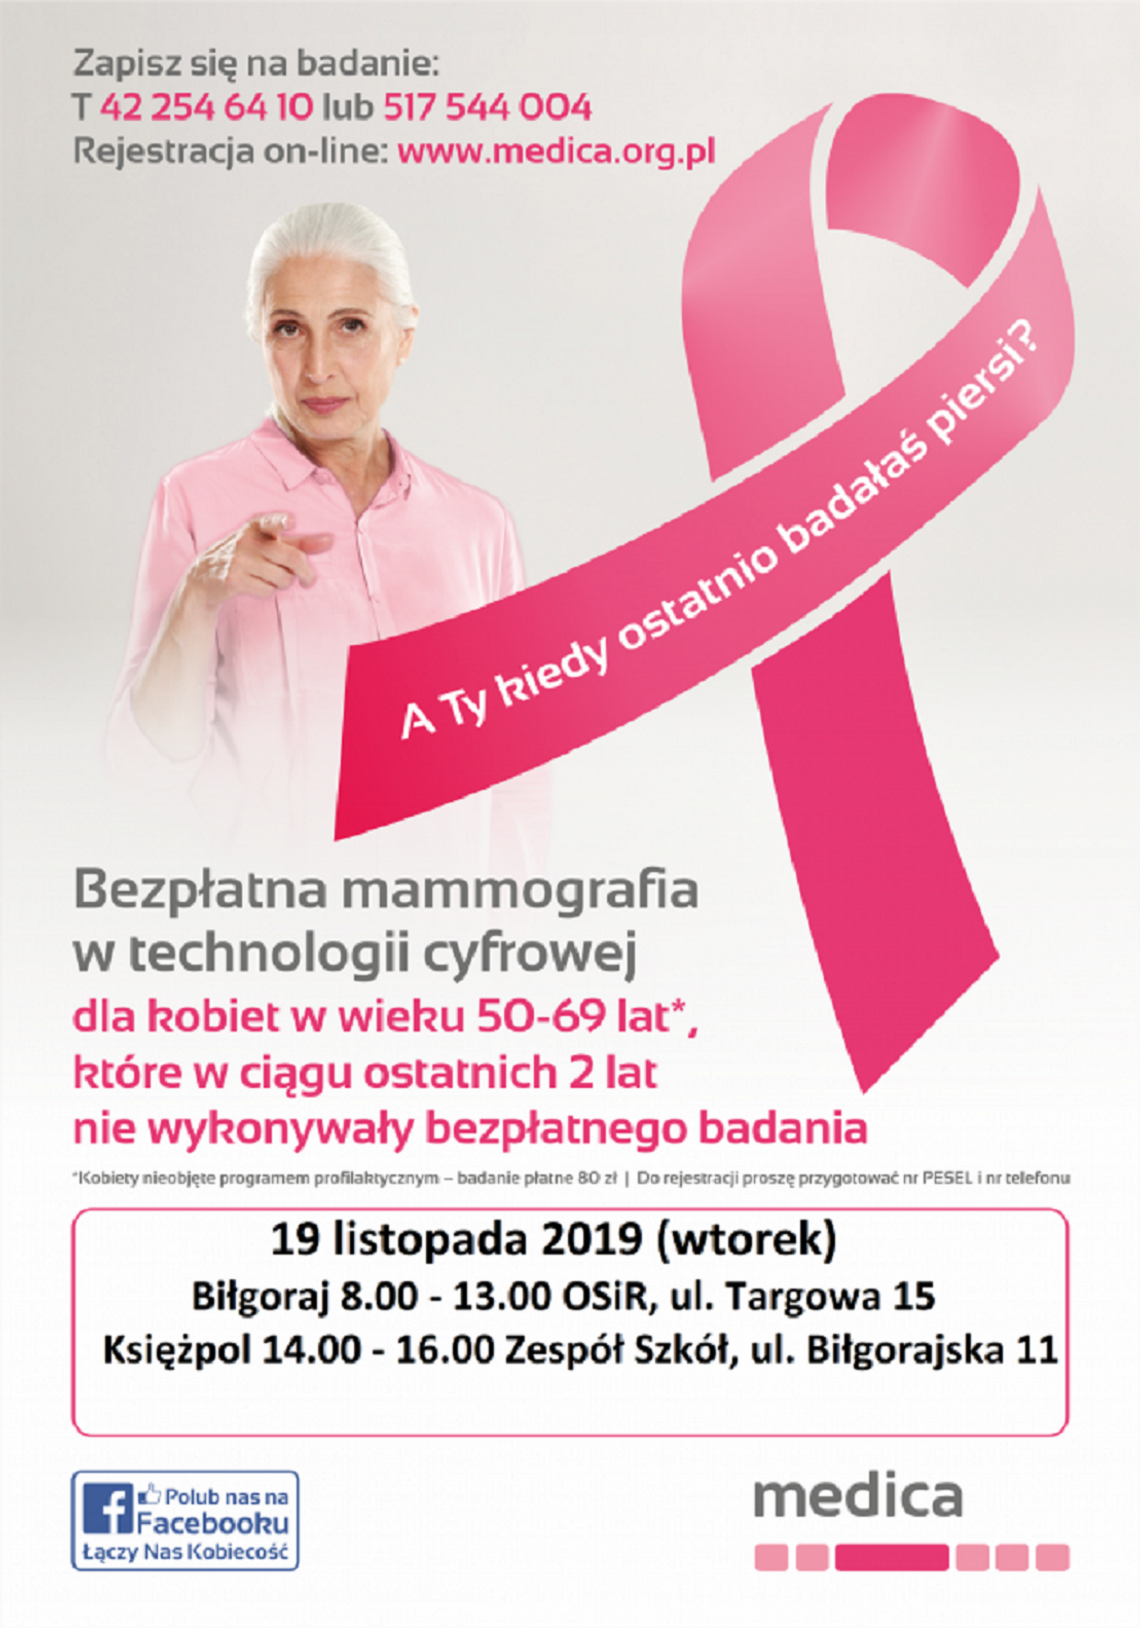 Darmowe badania dla kobiet. Zrób mammografię!